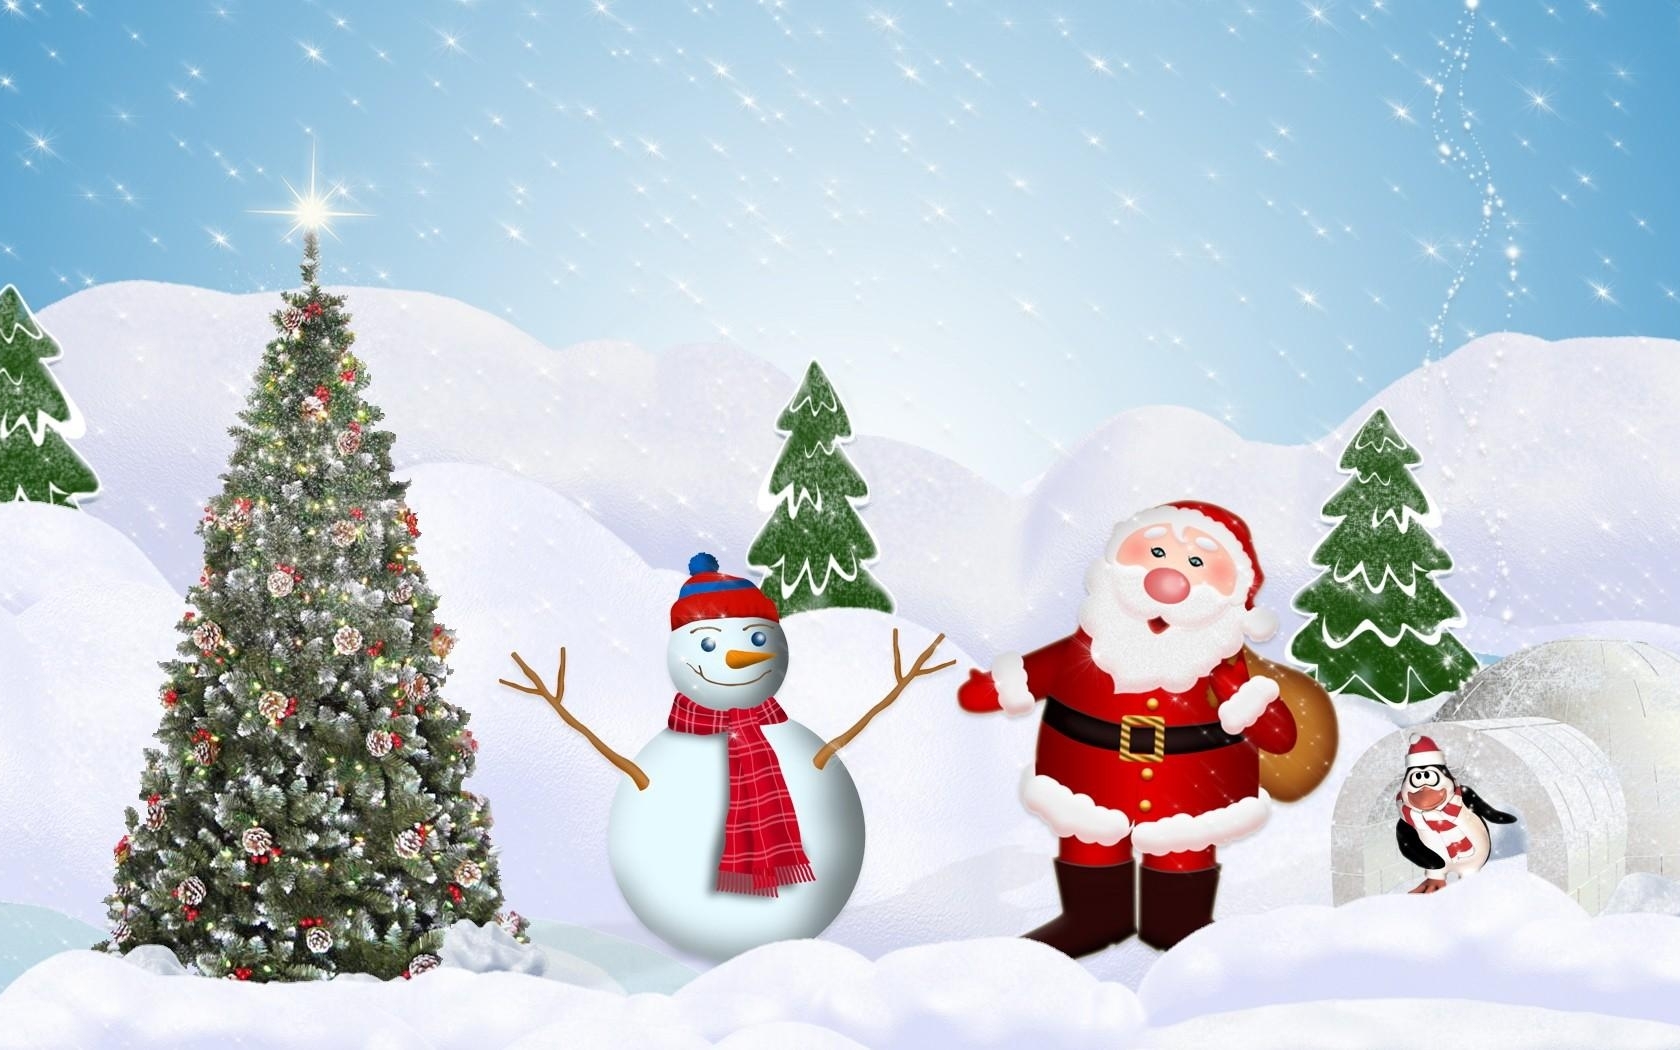 santa claus fondos de pantalla hd 1080p,navidad,papá noel,árbol de navidad,árbol,invierno